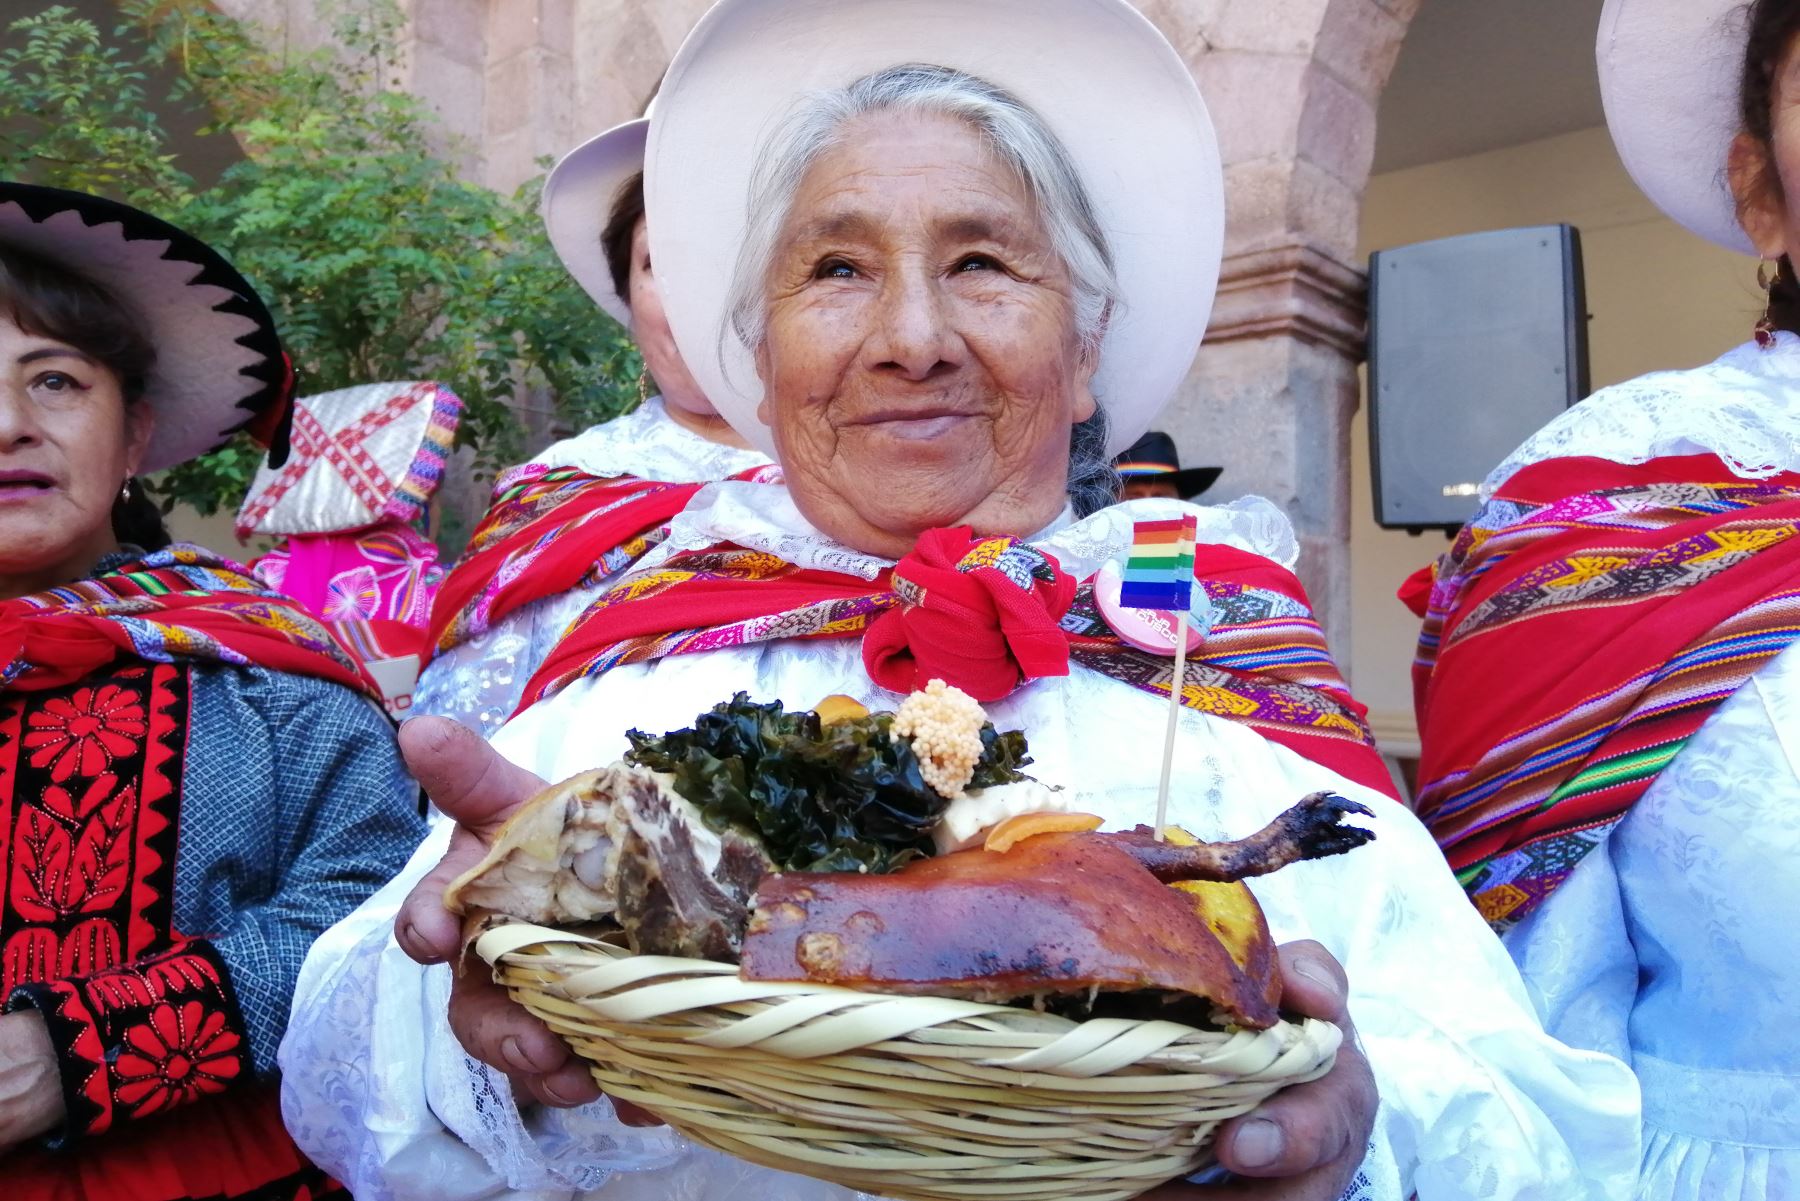 El chiriuchu se lucirá durante festividad del Corpus Christi que se celebra en Cusco. ANDINA/Percy Hurtado Santillán